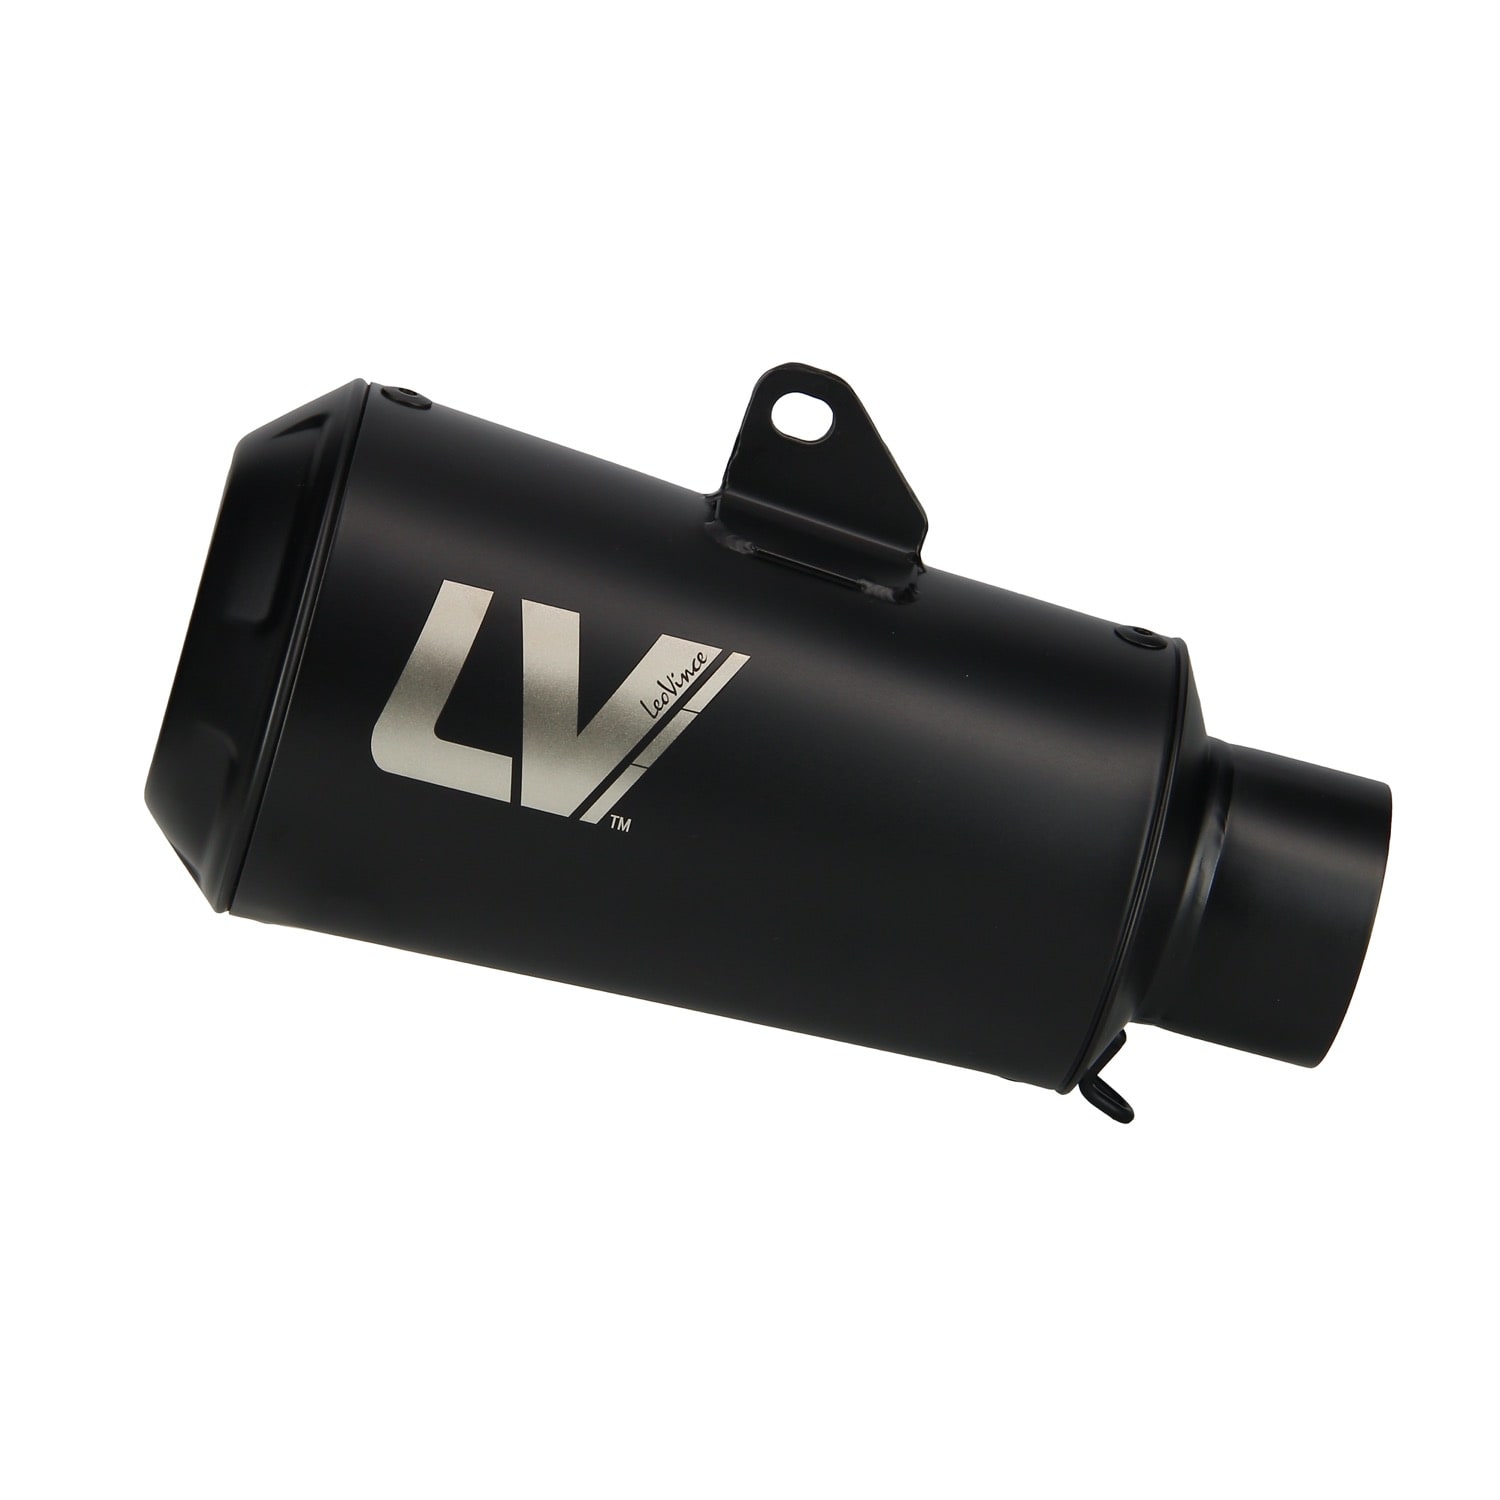 LeoVince LV-10 slip-on for Honda CB1000R